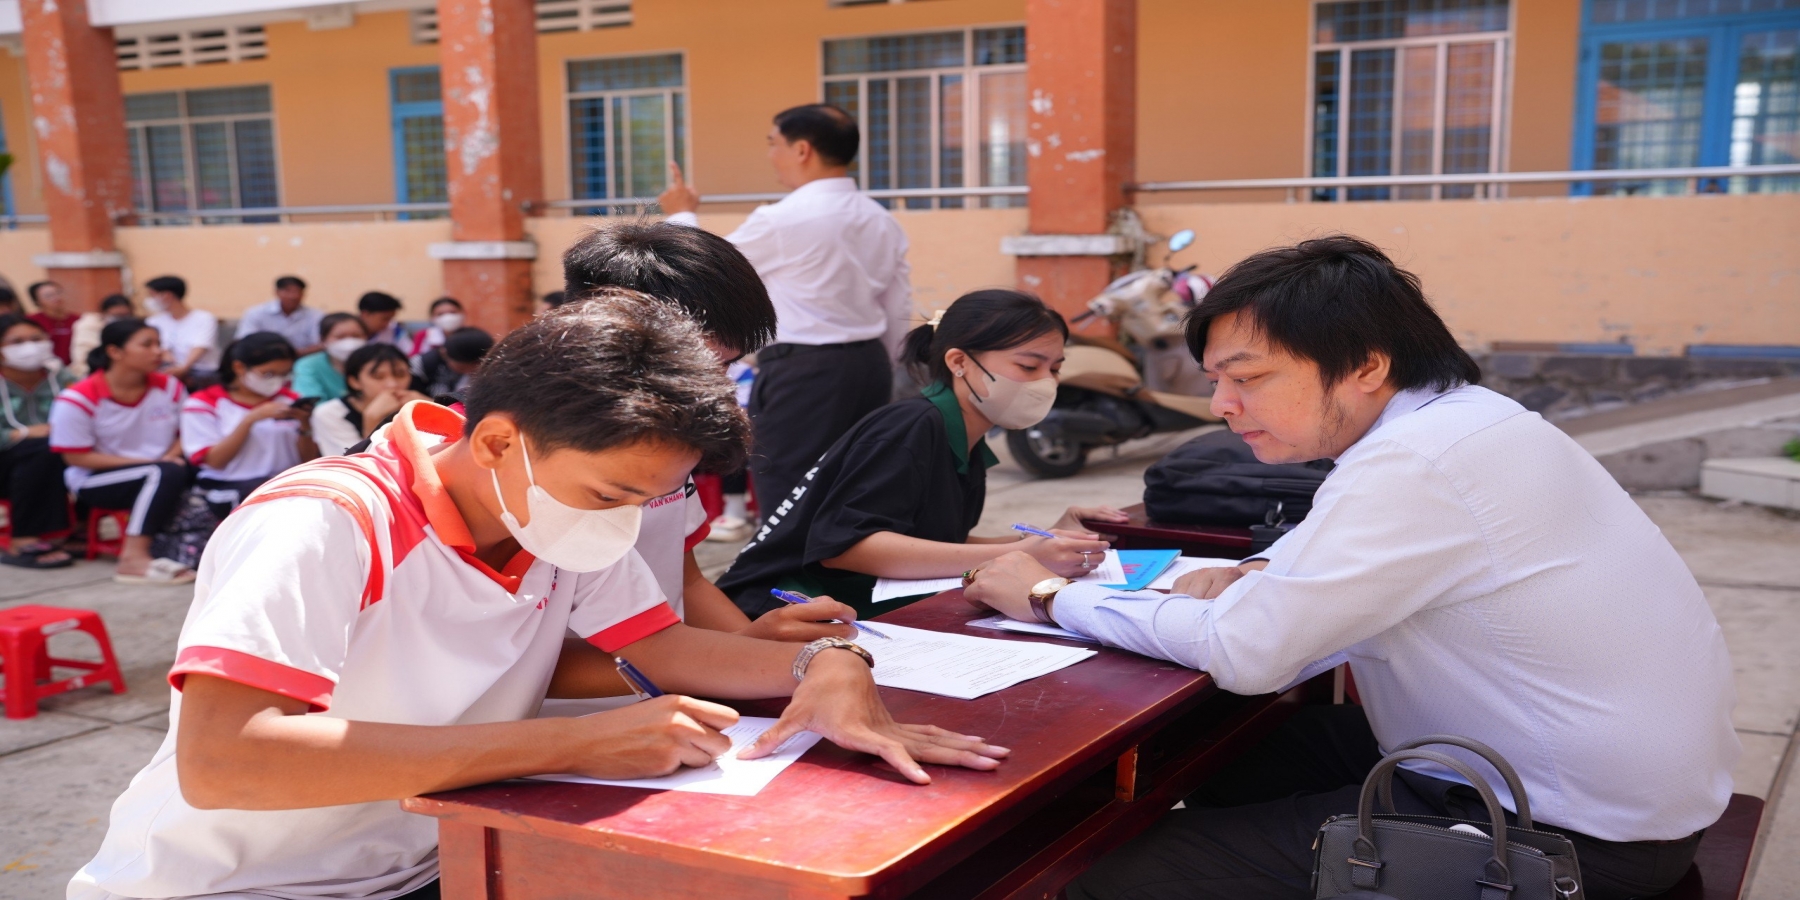 Trường Đại học Kiên Giang tổ chức họp mặt, tư vấn tuyển sinh cho hơn 1.600 phụ huynh, học sinh 